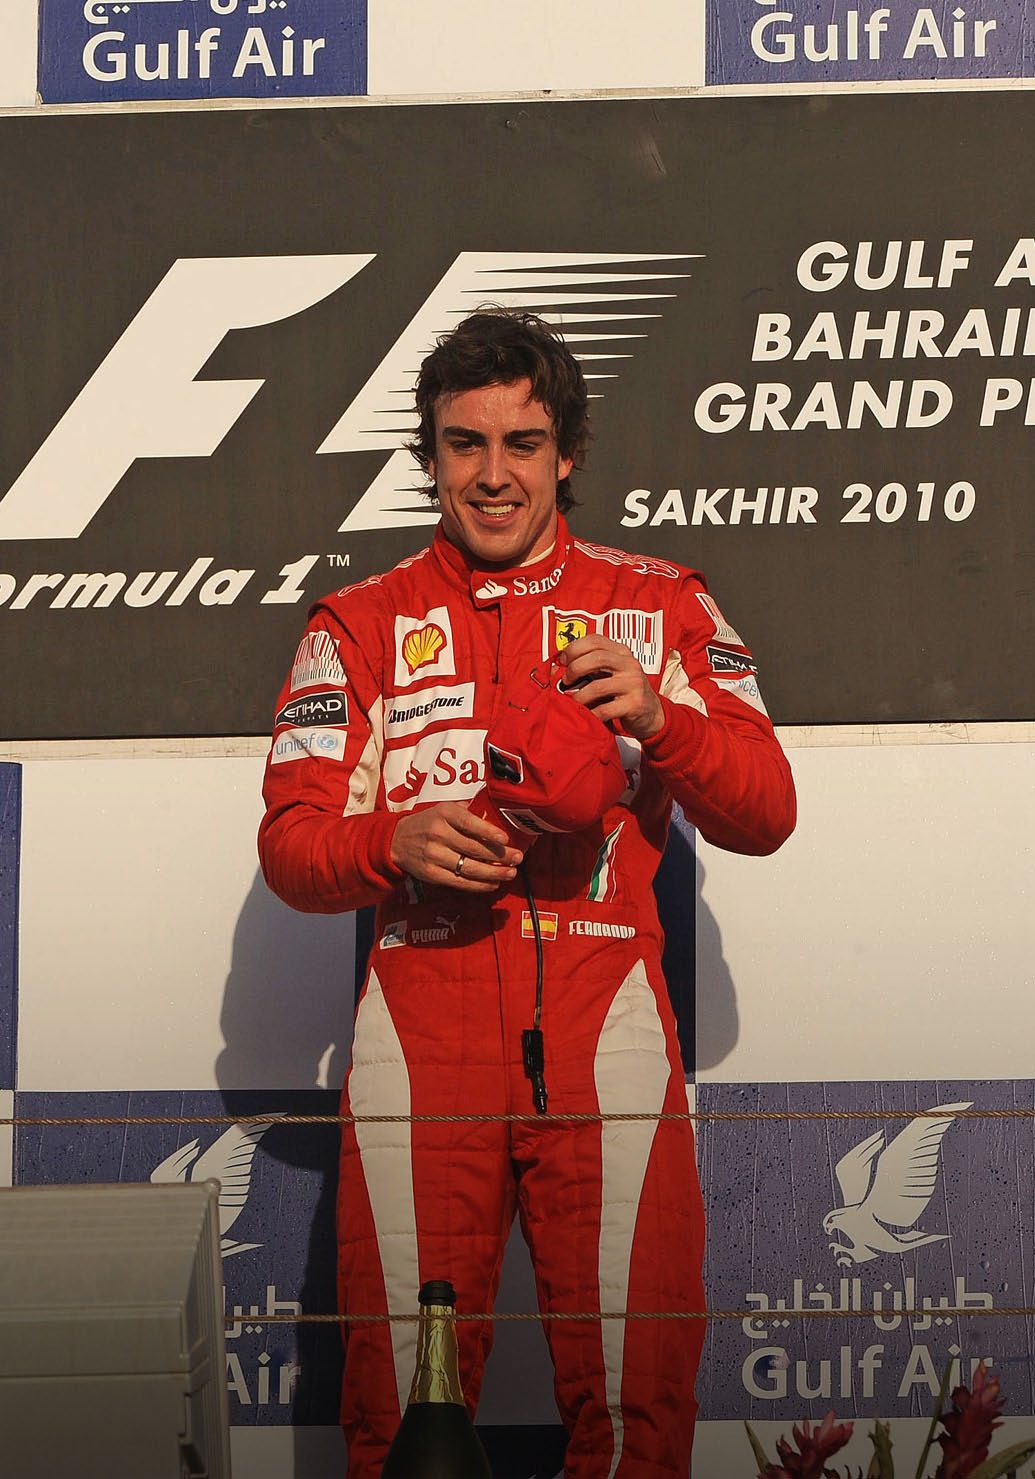 Po závodě: Velká cena Bahrajnu Formule 1 vstoupila do sedmé dekády své